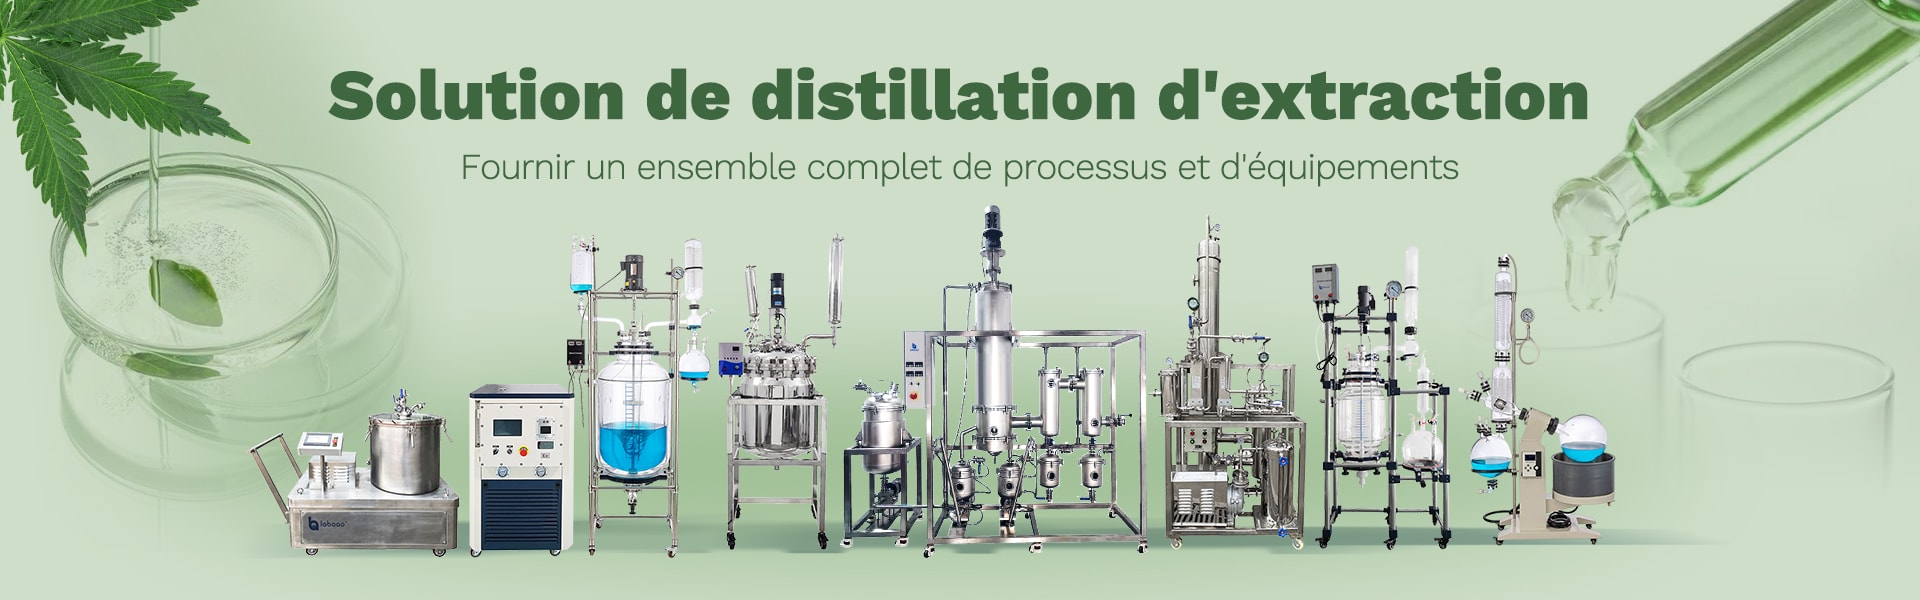 bannière d'équipement de distillation d'extraction